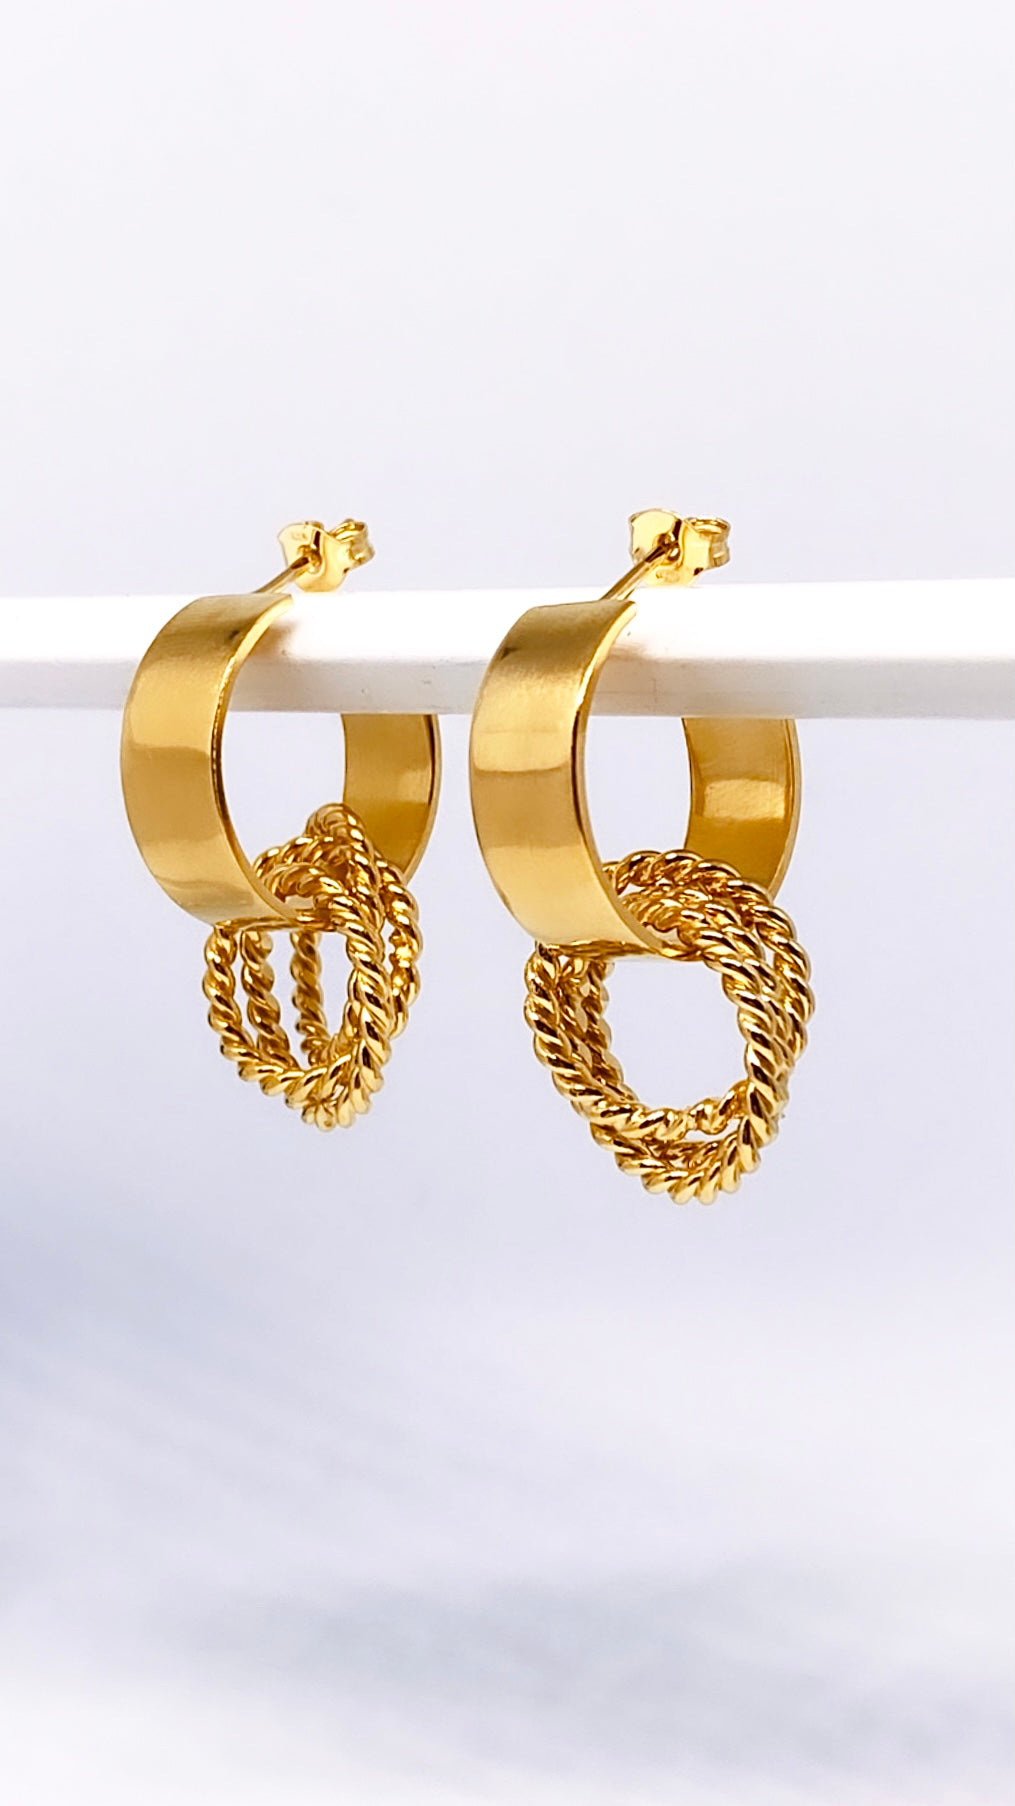 Hulahoop Earrings with rings